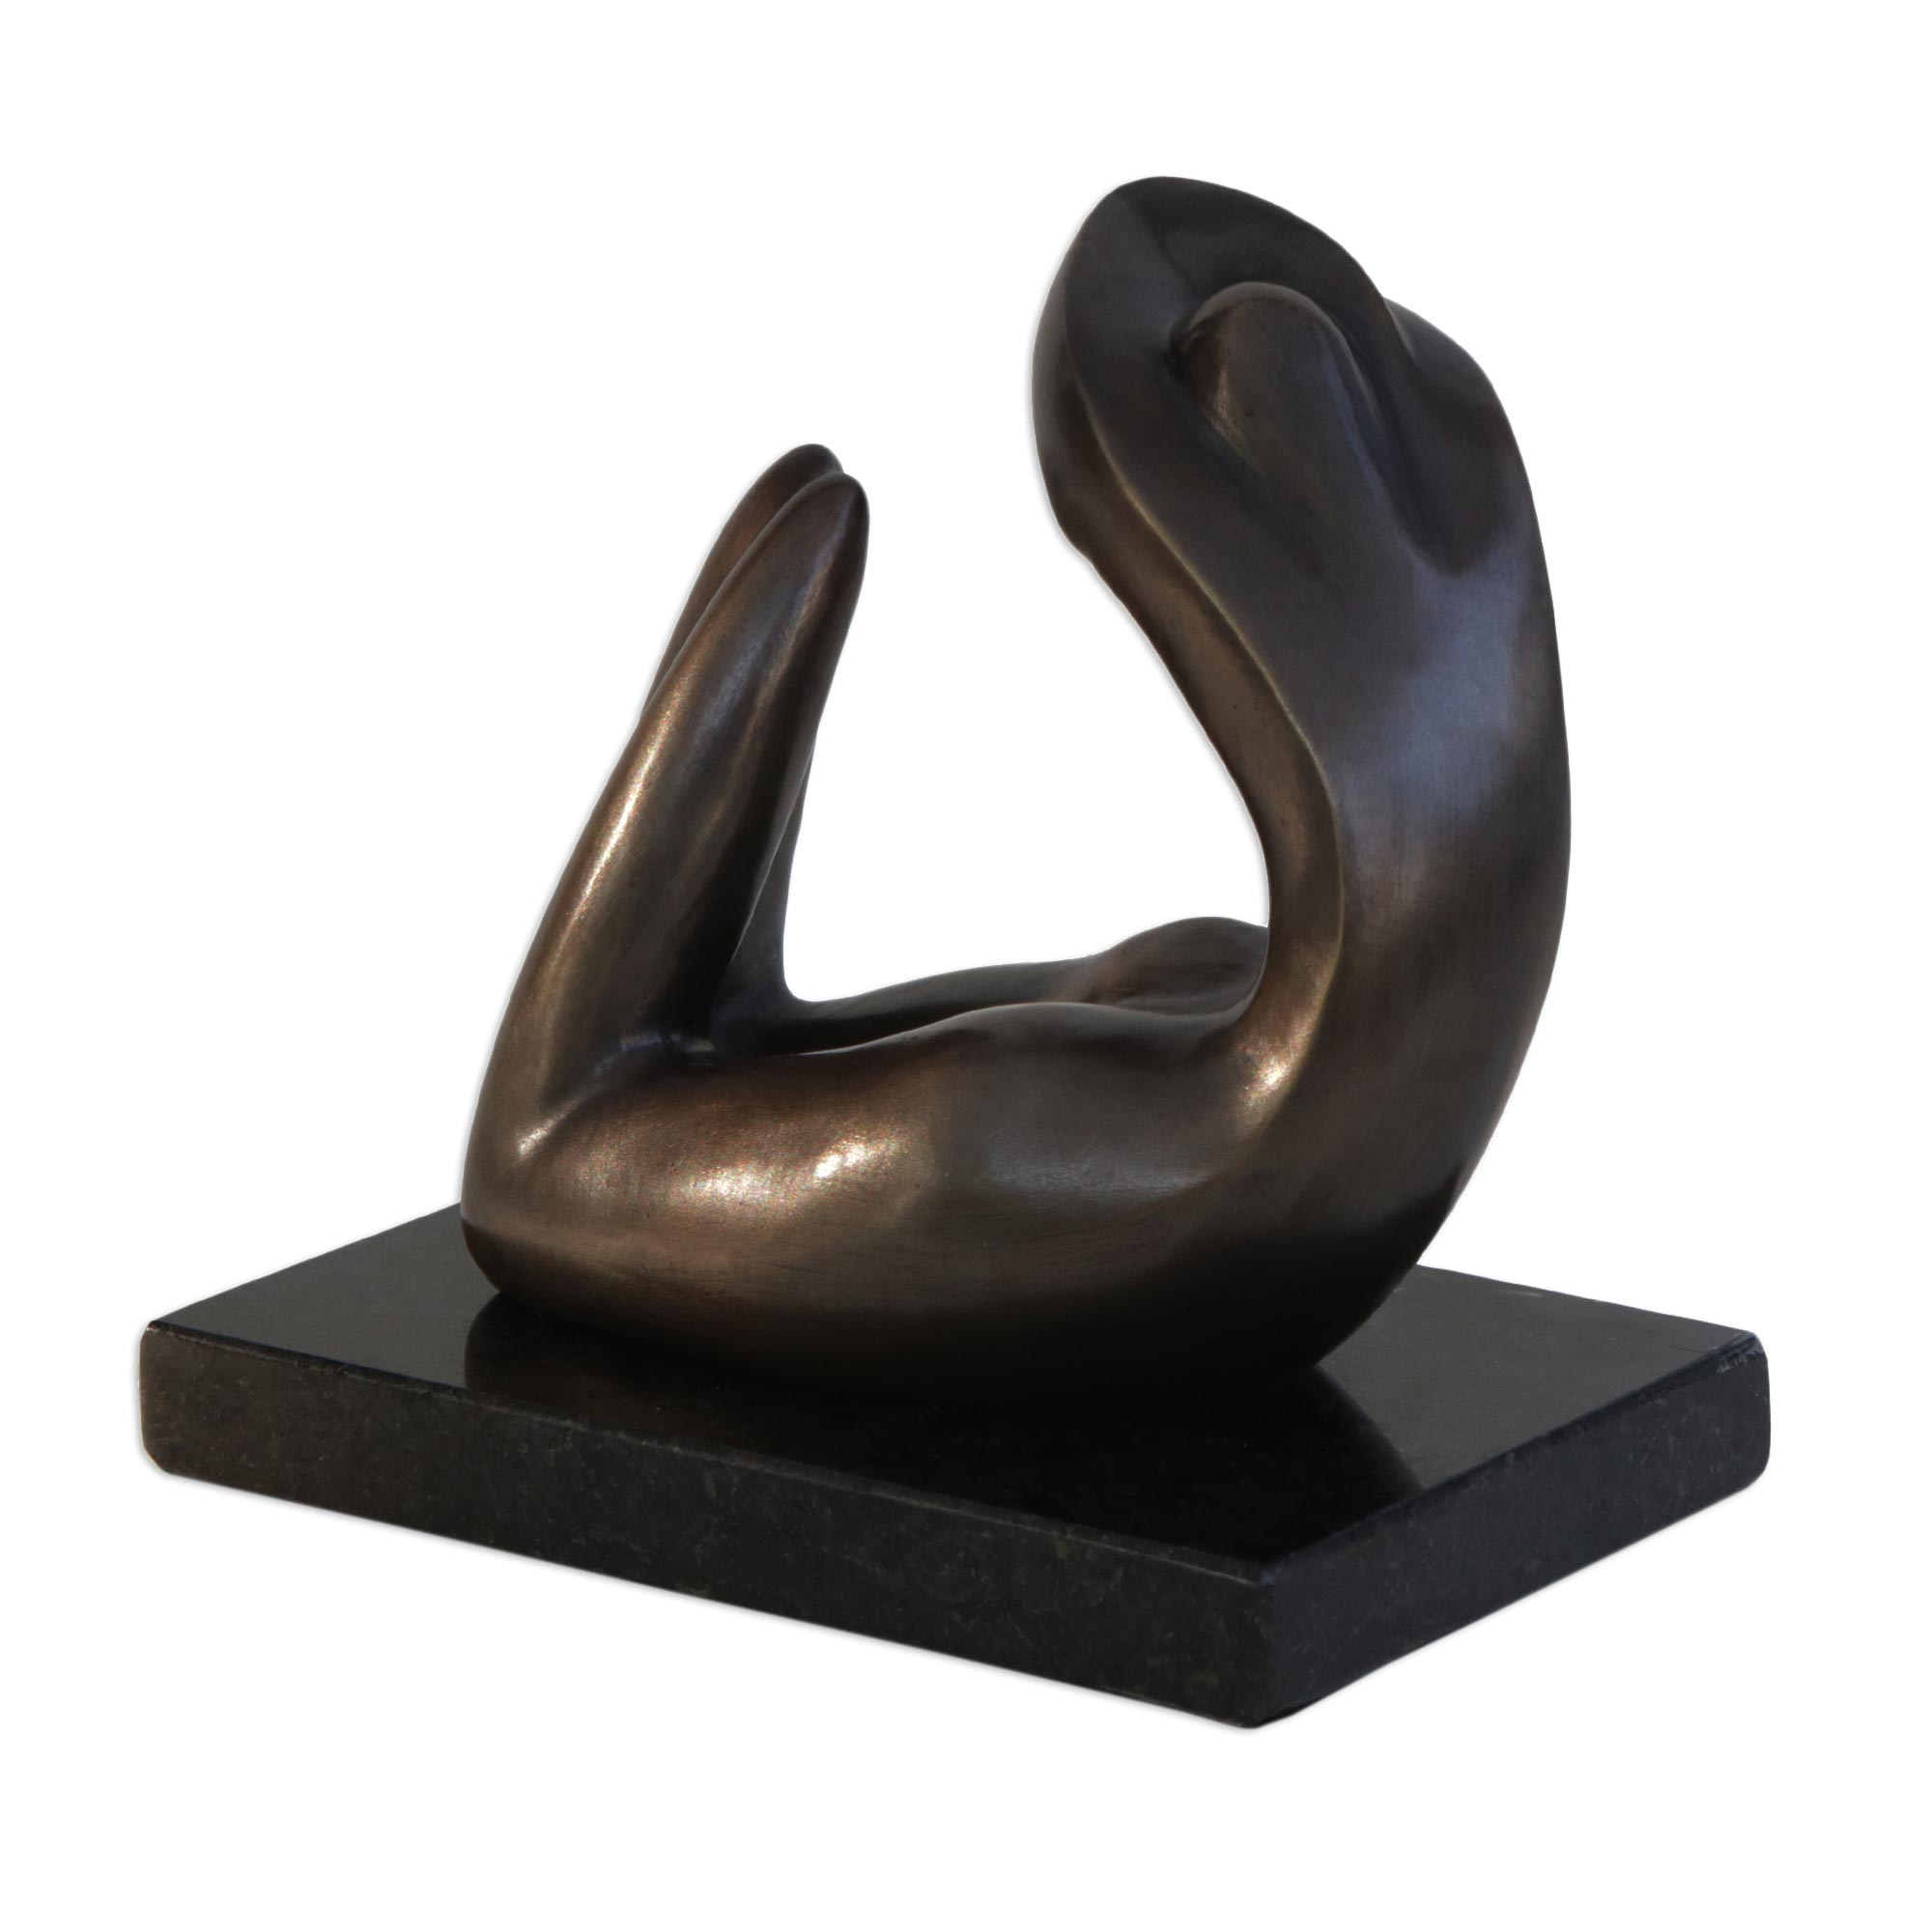 Modern Sensual Bronze Sculpture of a Woman from Brazil - Sensual Woman ...